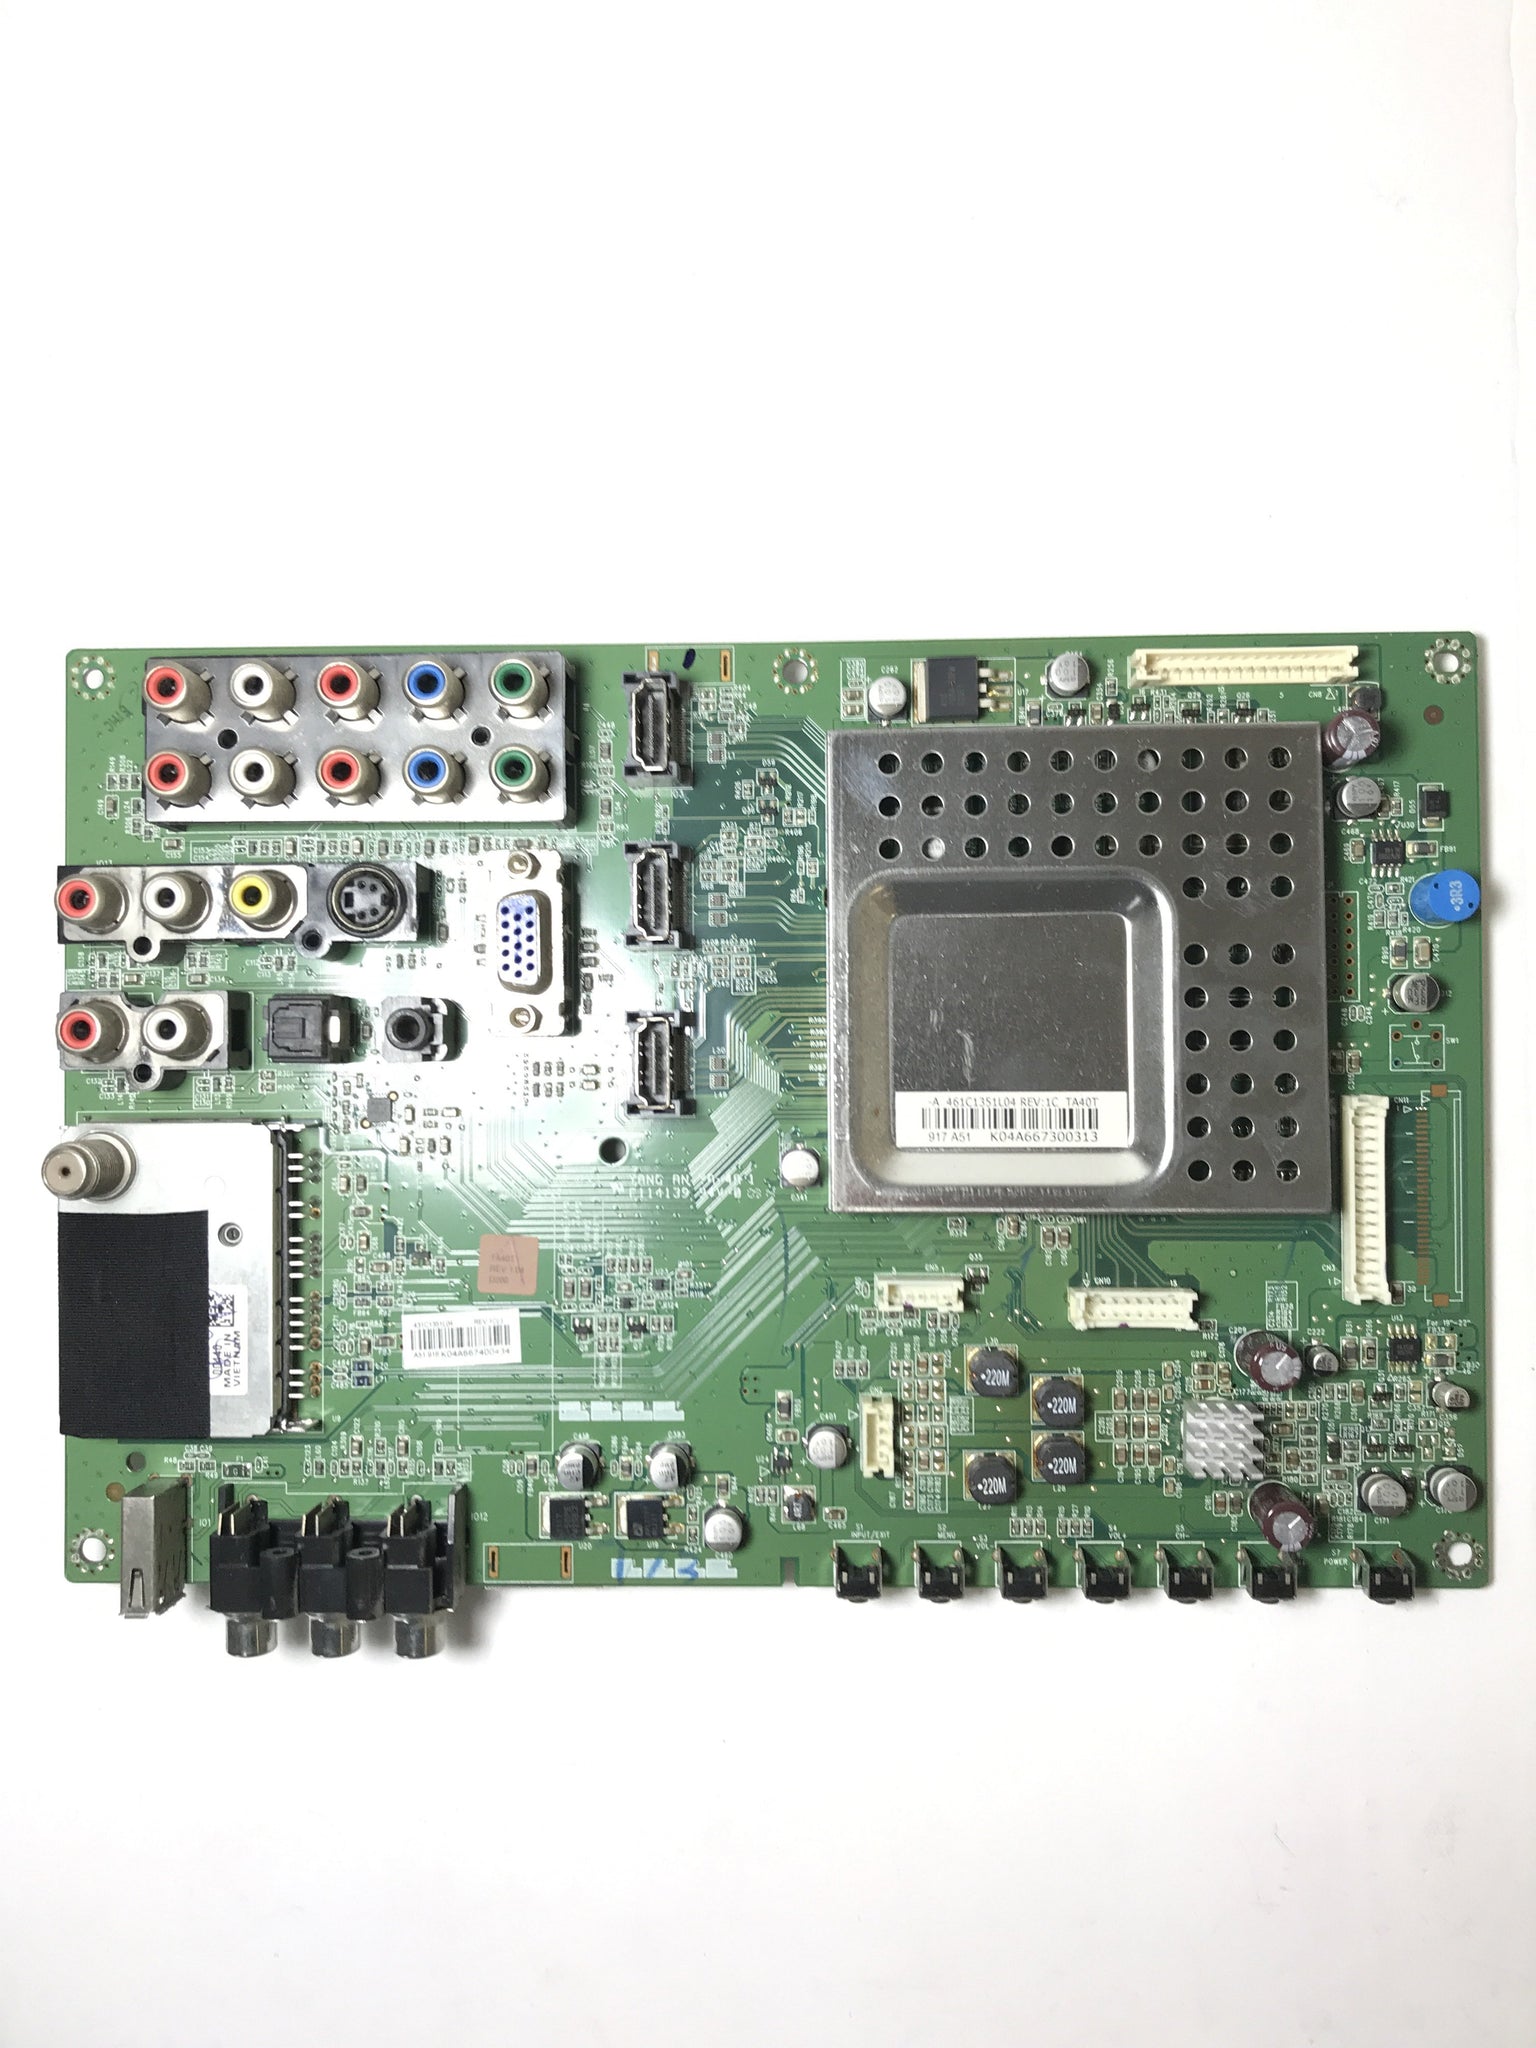 Toshiba 75014225 (STA40T VTV-L4008) Main Board for 40RV525R